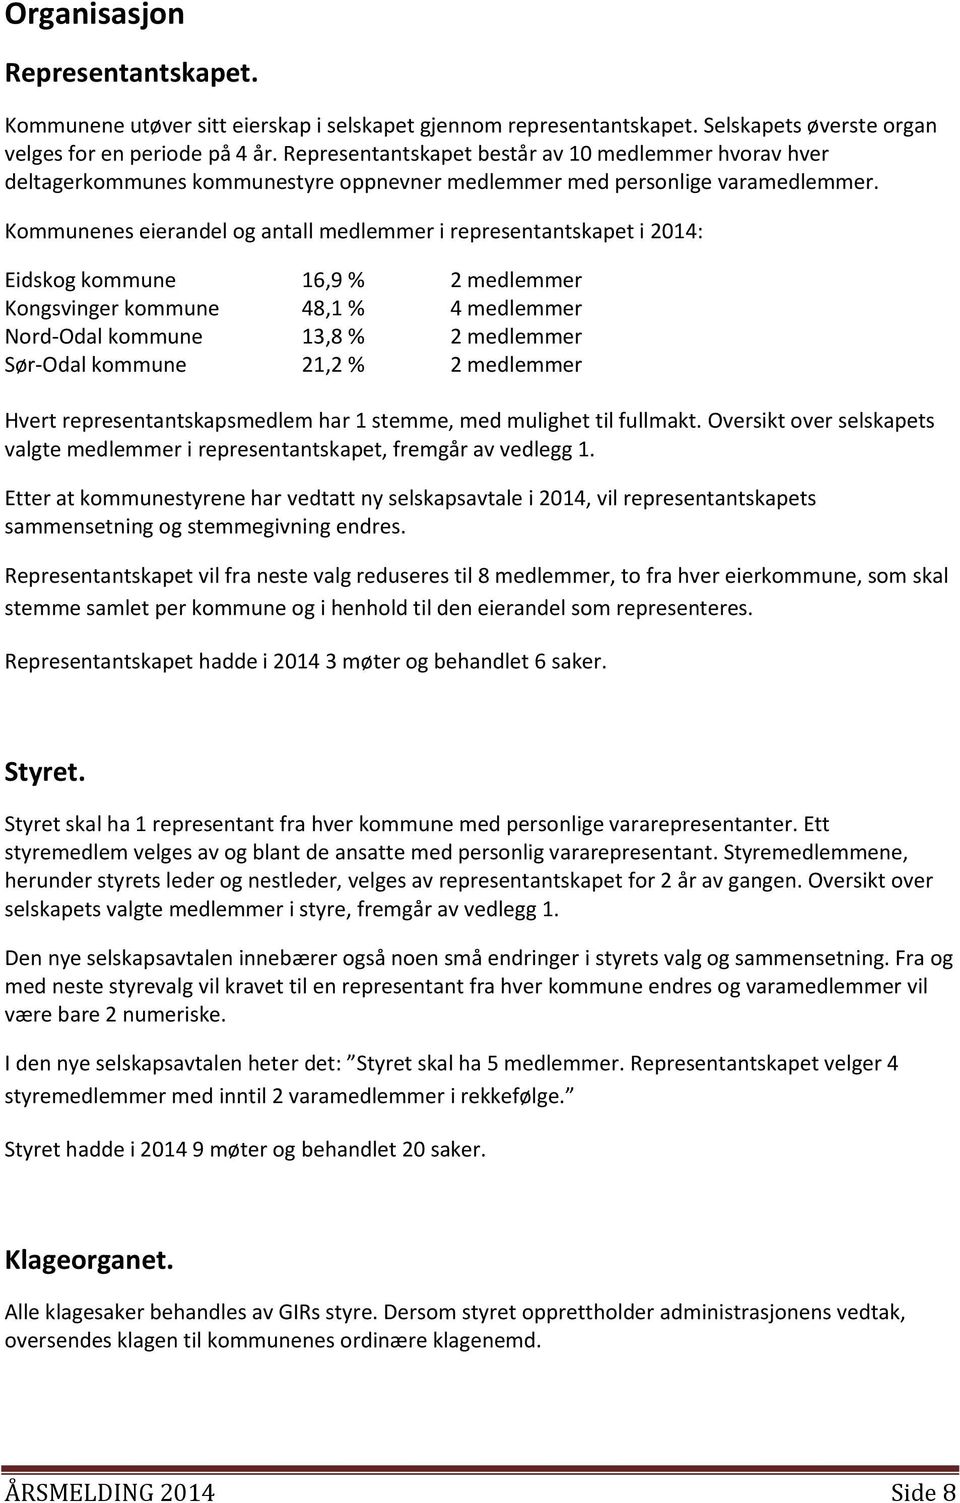 Kommunenes eierandel og antall medlemmer i representantskapet i 2014: Eidskog kommune 16,9 % 2 medlemmer Kongsvinger kommune 48,1 % 4 medlemmer Nord-Odal kommune 13,8 % 2 medlemmer Sør-Odal kommune